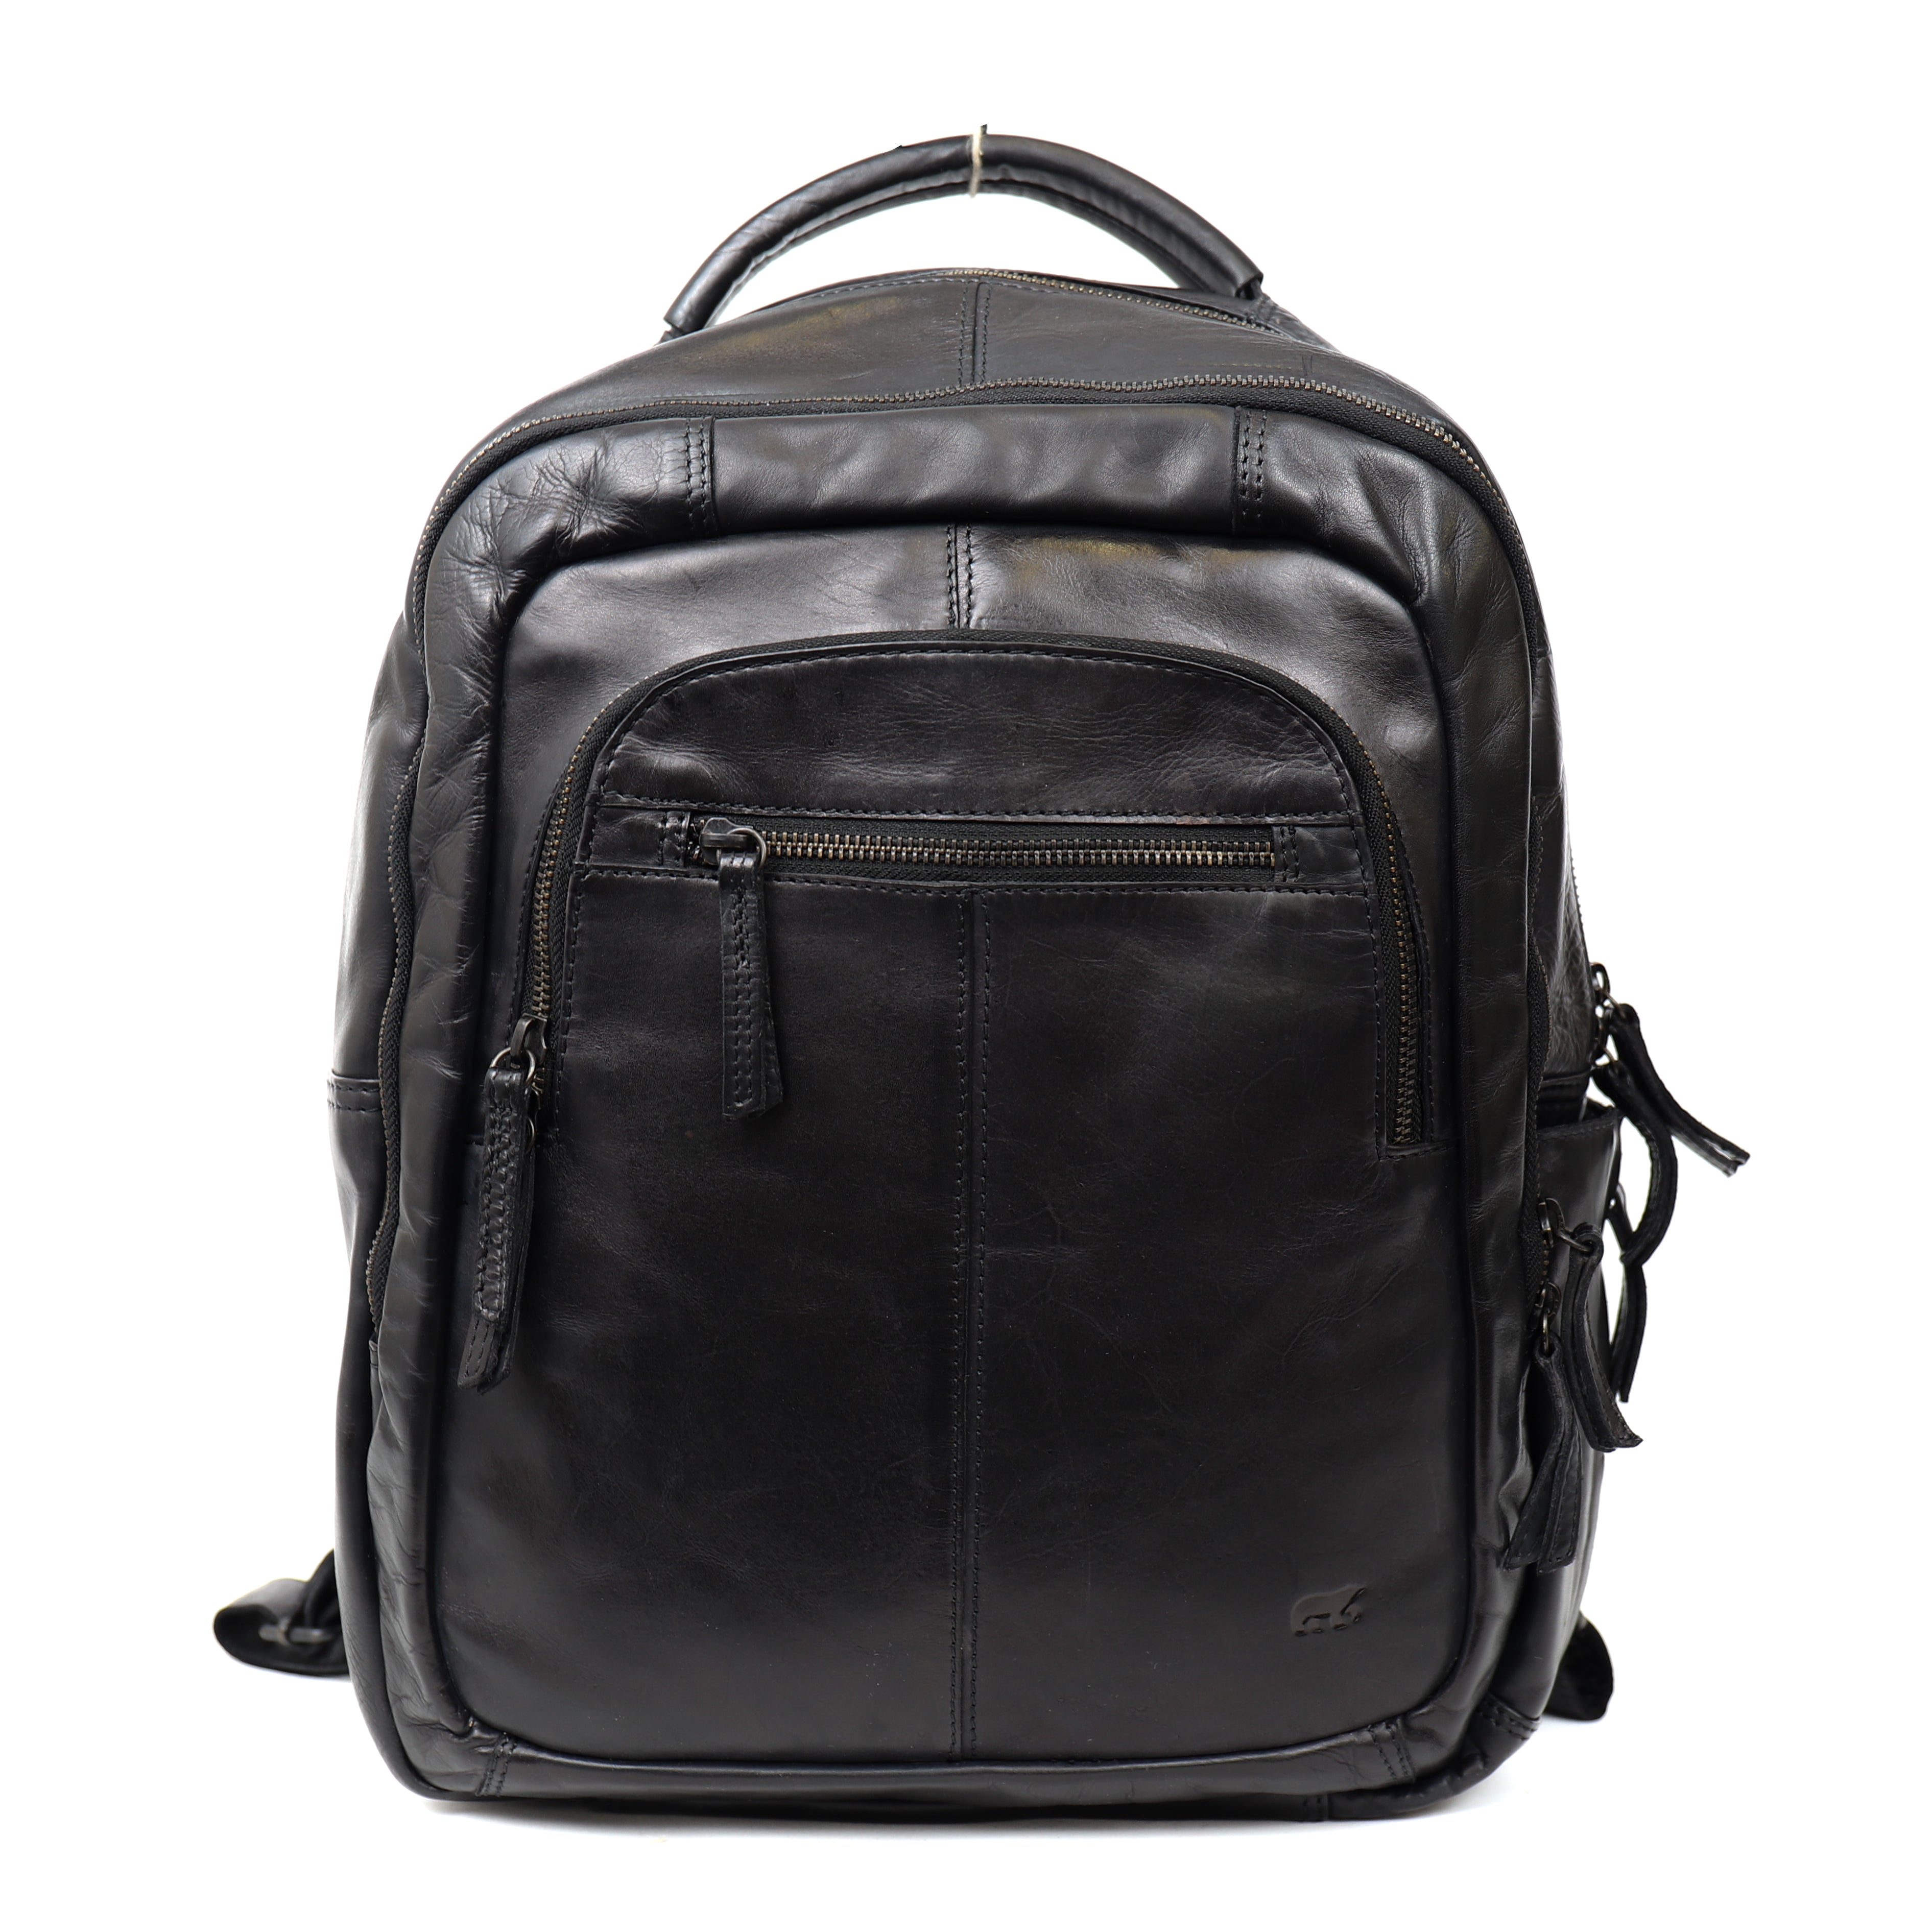 Backpack 'Mace' black